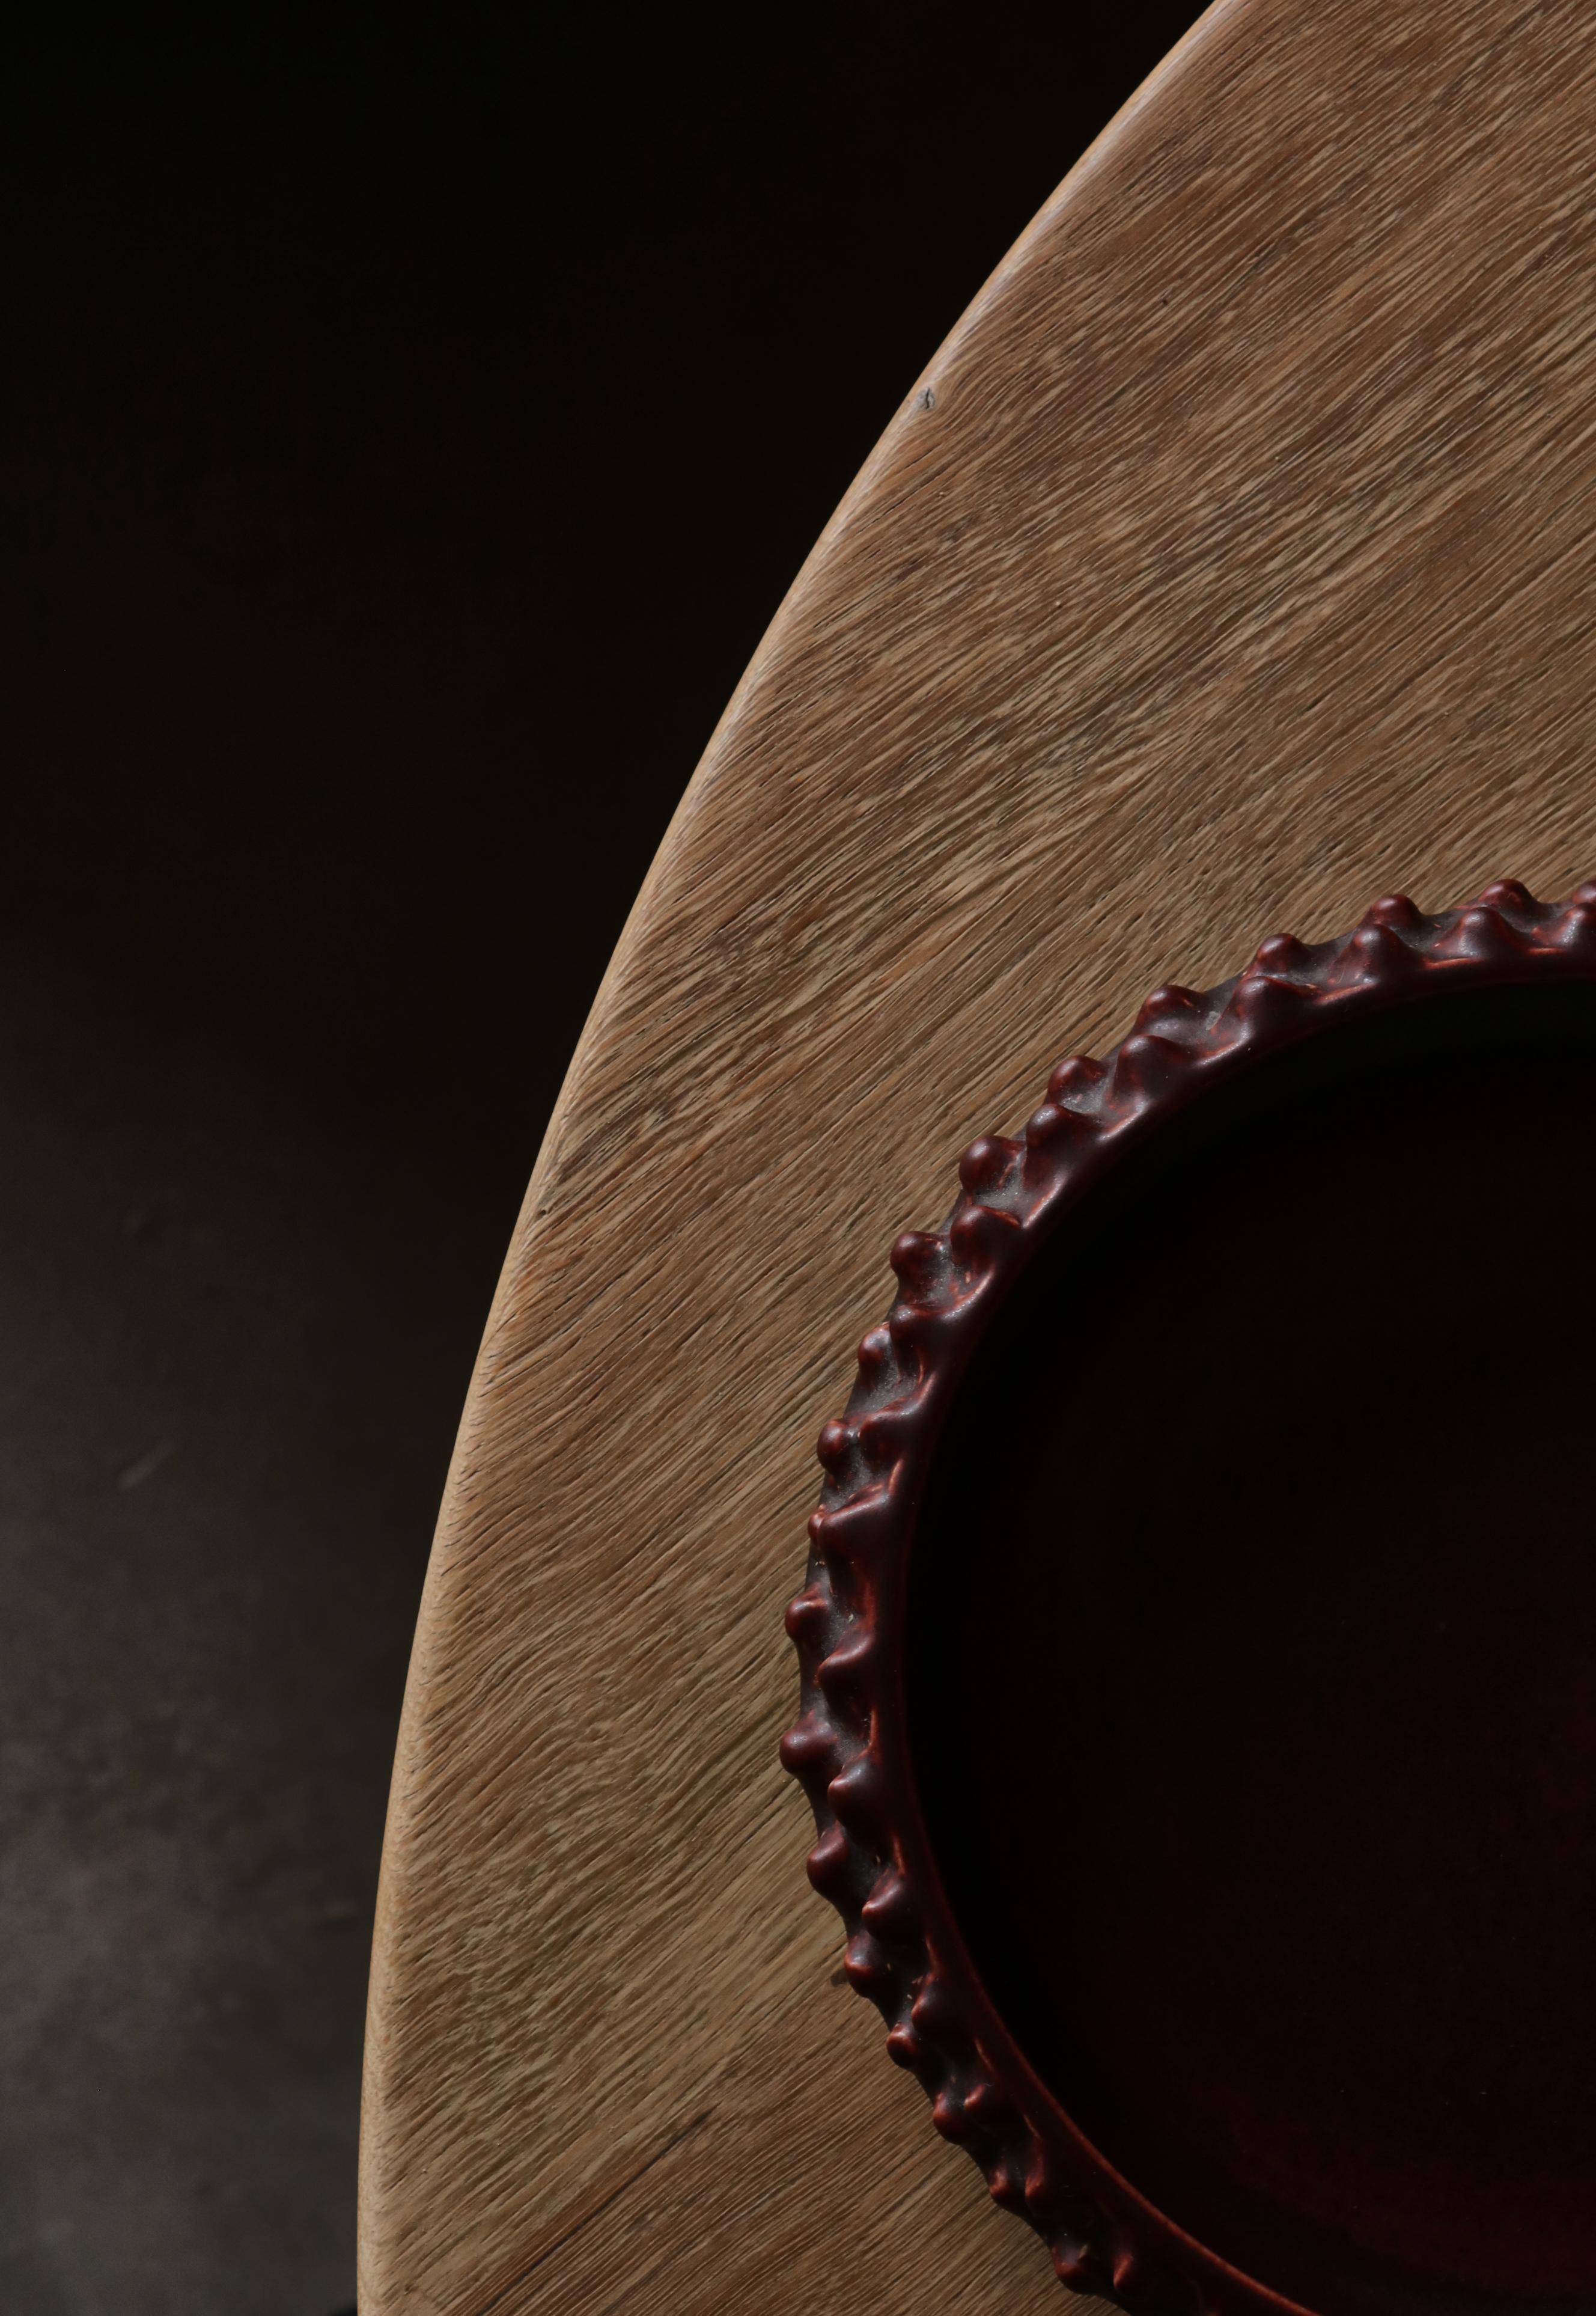 Merveilleux plateau en céramique de style bourgeonnant, fabriqué à la main dans l'atelier de céramique Ravnild, au Danemark, dans les années 1950. Le bol est recouvert d'une glaçure rouge foncé de couleur sang de bœuf.
L'atelier Ravnild a été créé